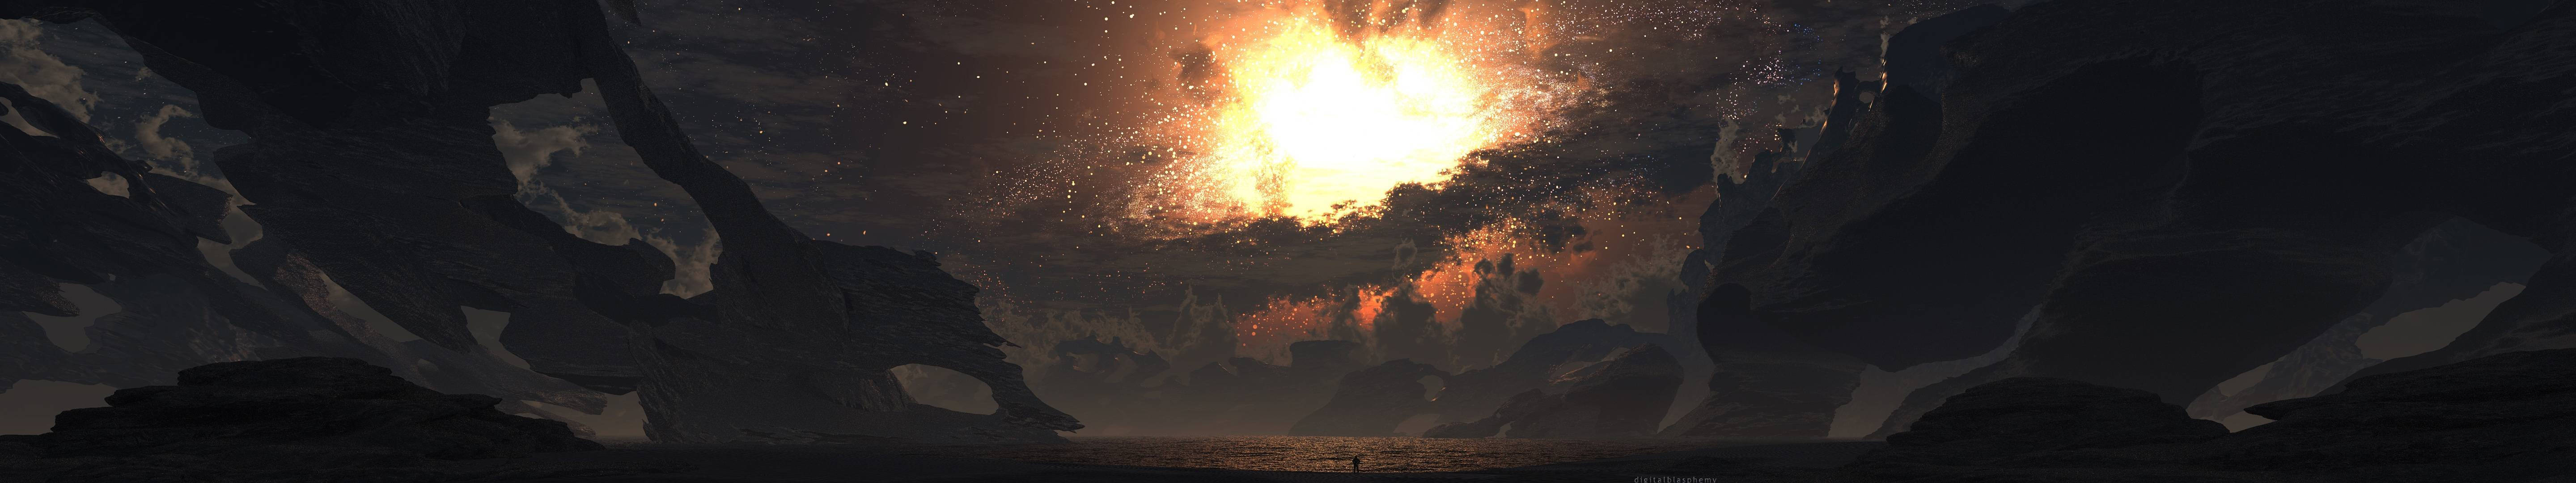 Dark Sky Explosion Wallpaper